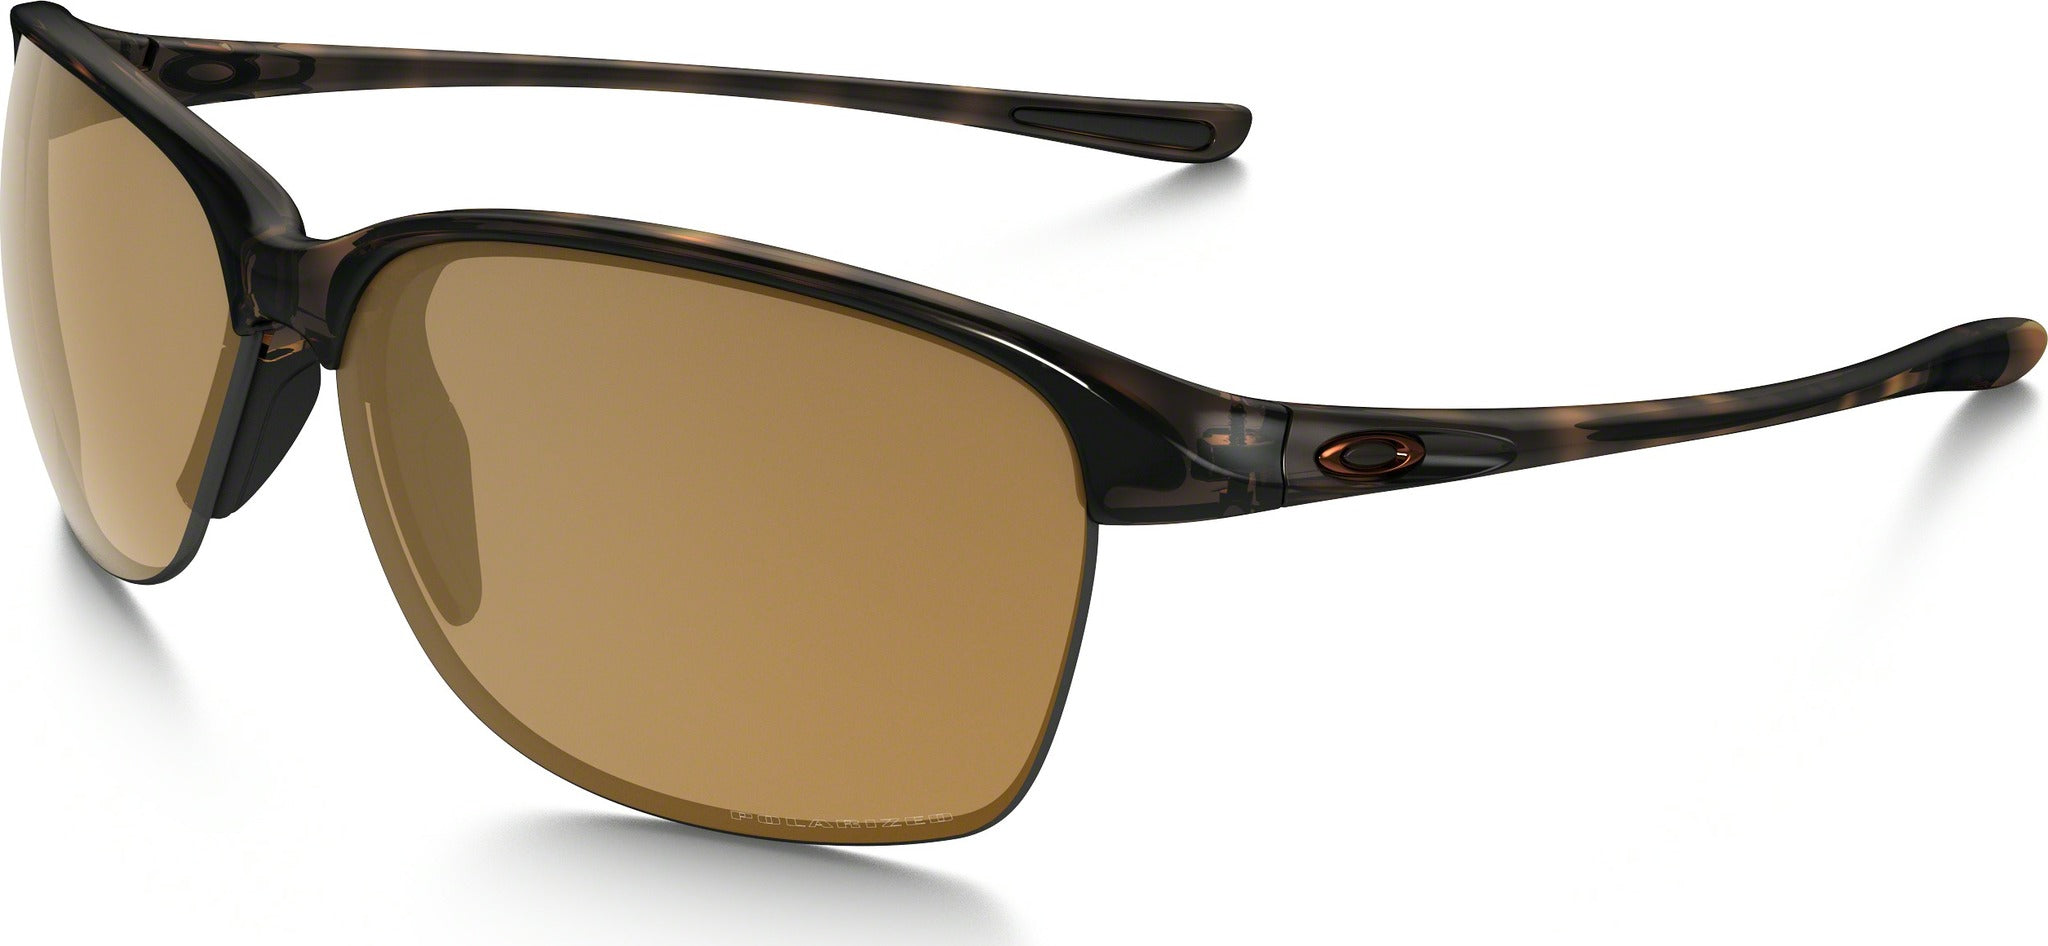 Oakley Unstoppable - Tortoise - Bronze Polarized Lens Sunglasses | The ...